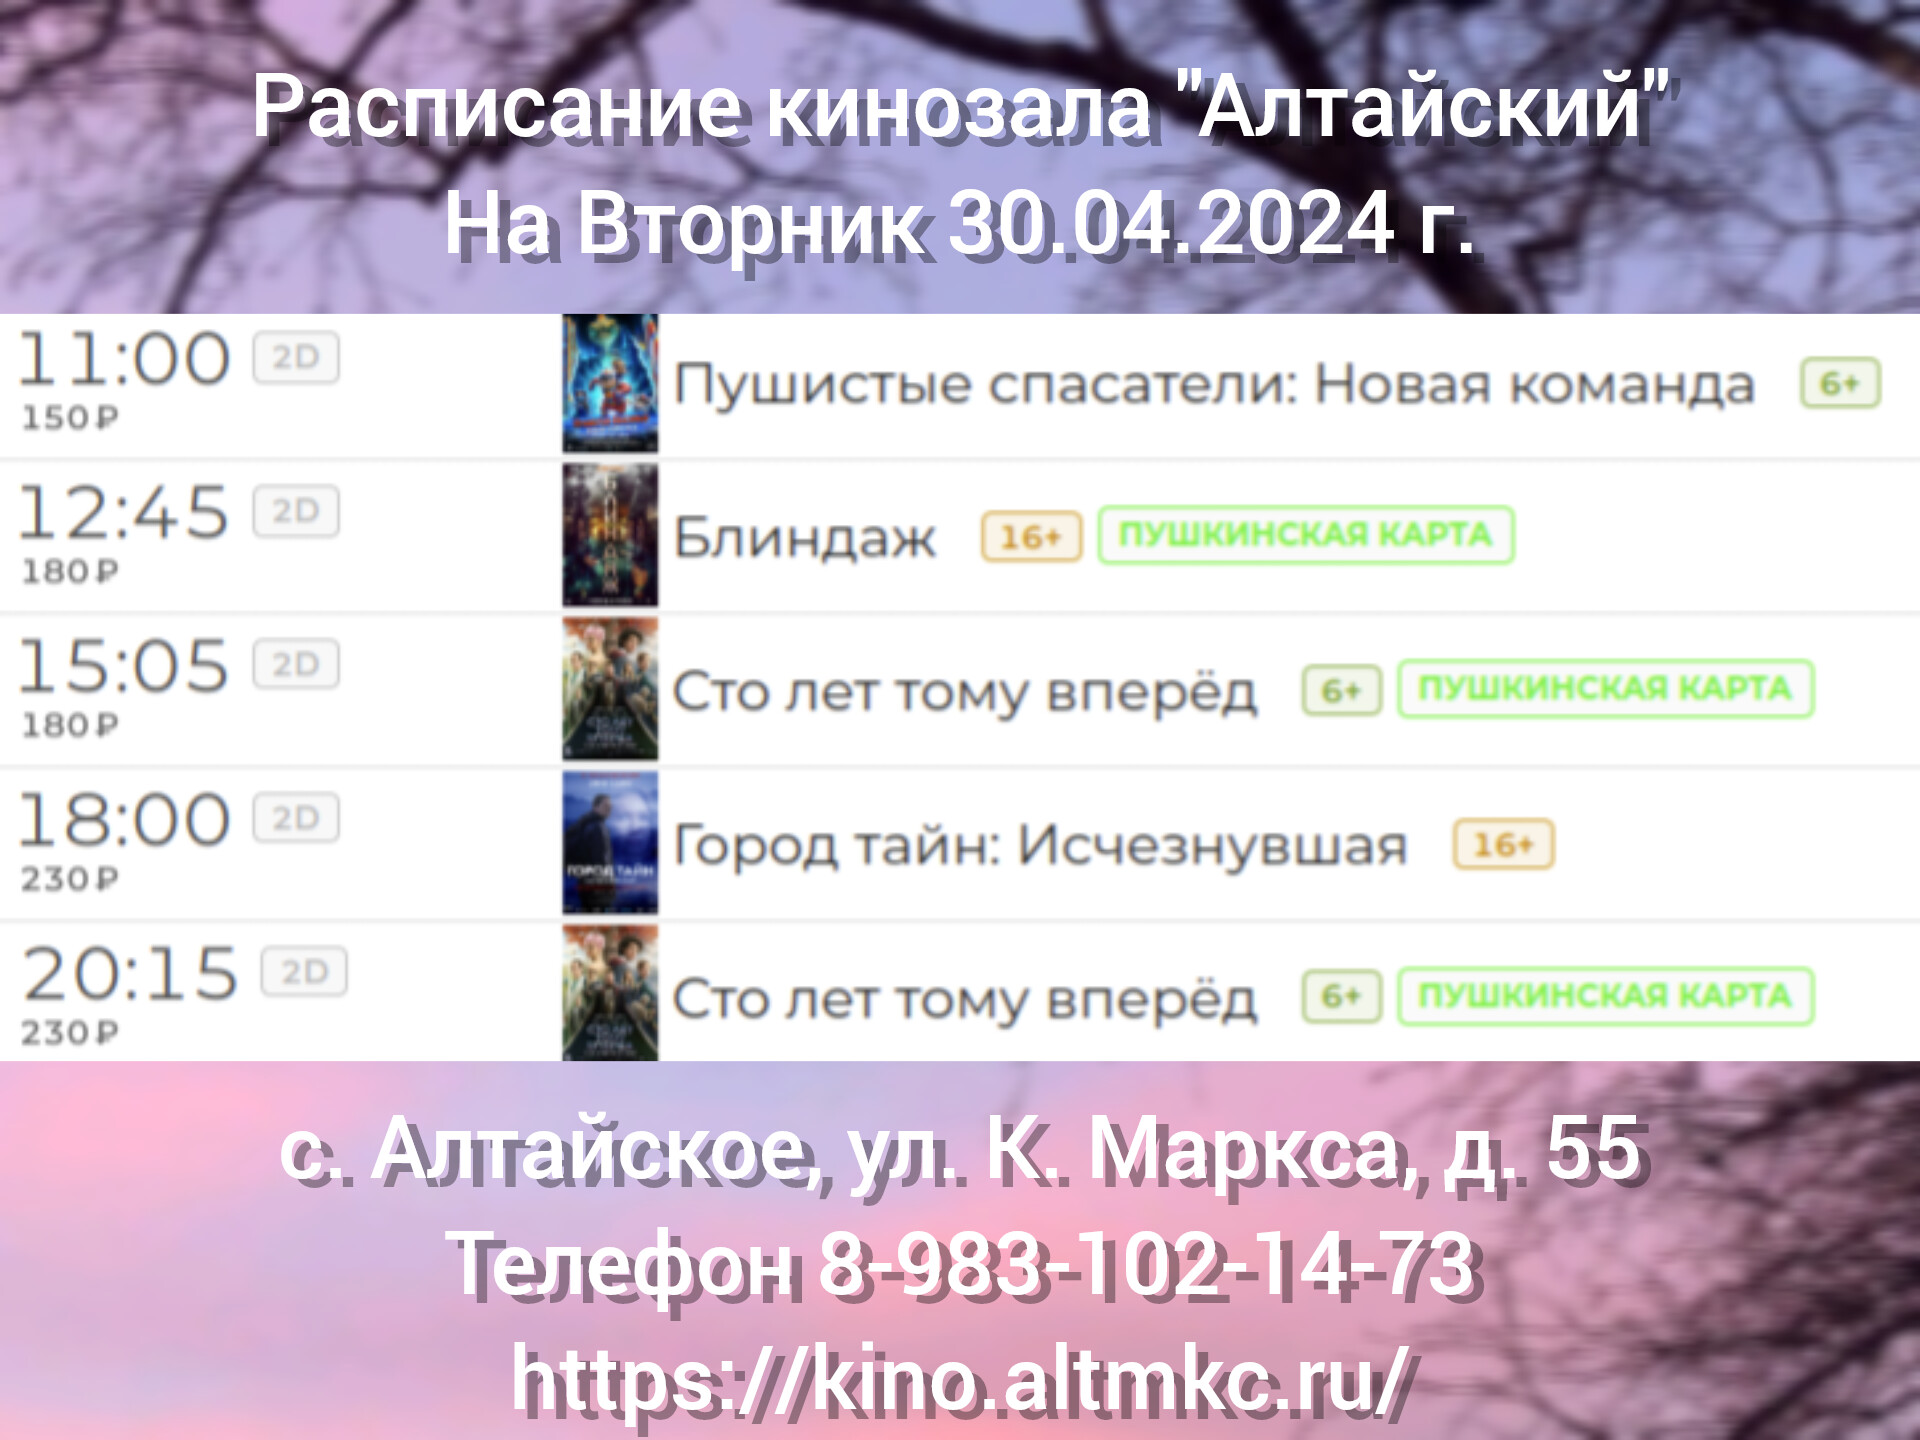 Расписание кинозала в с.Алтайское на 30.04.2024.